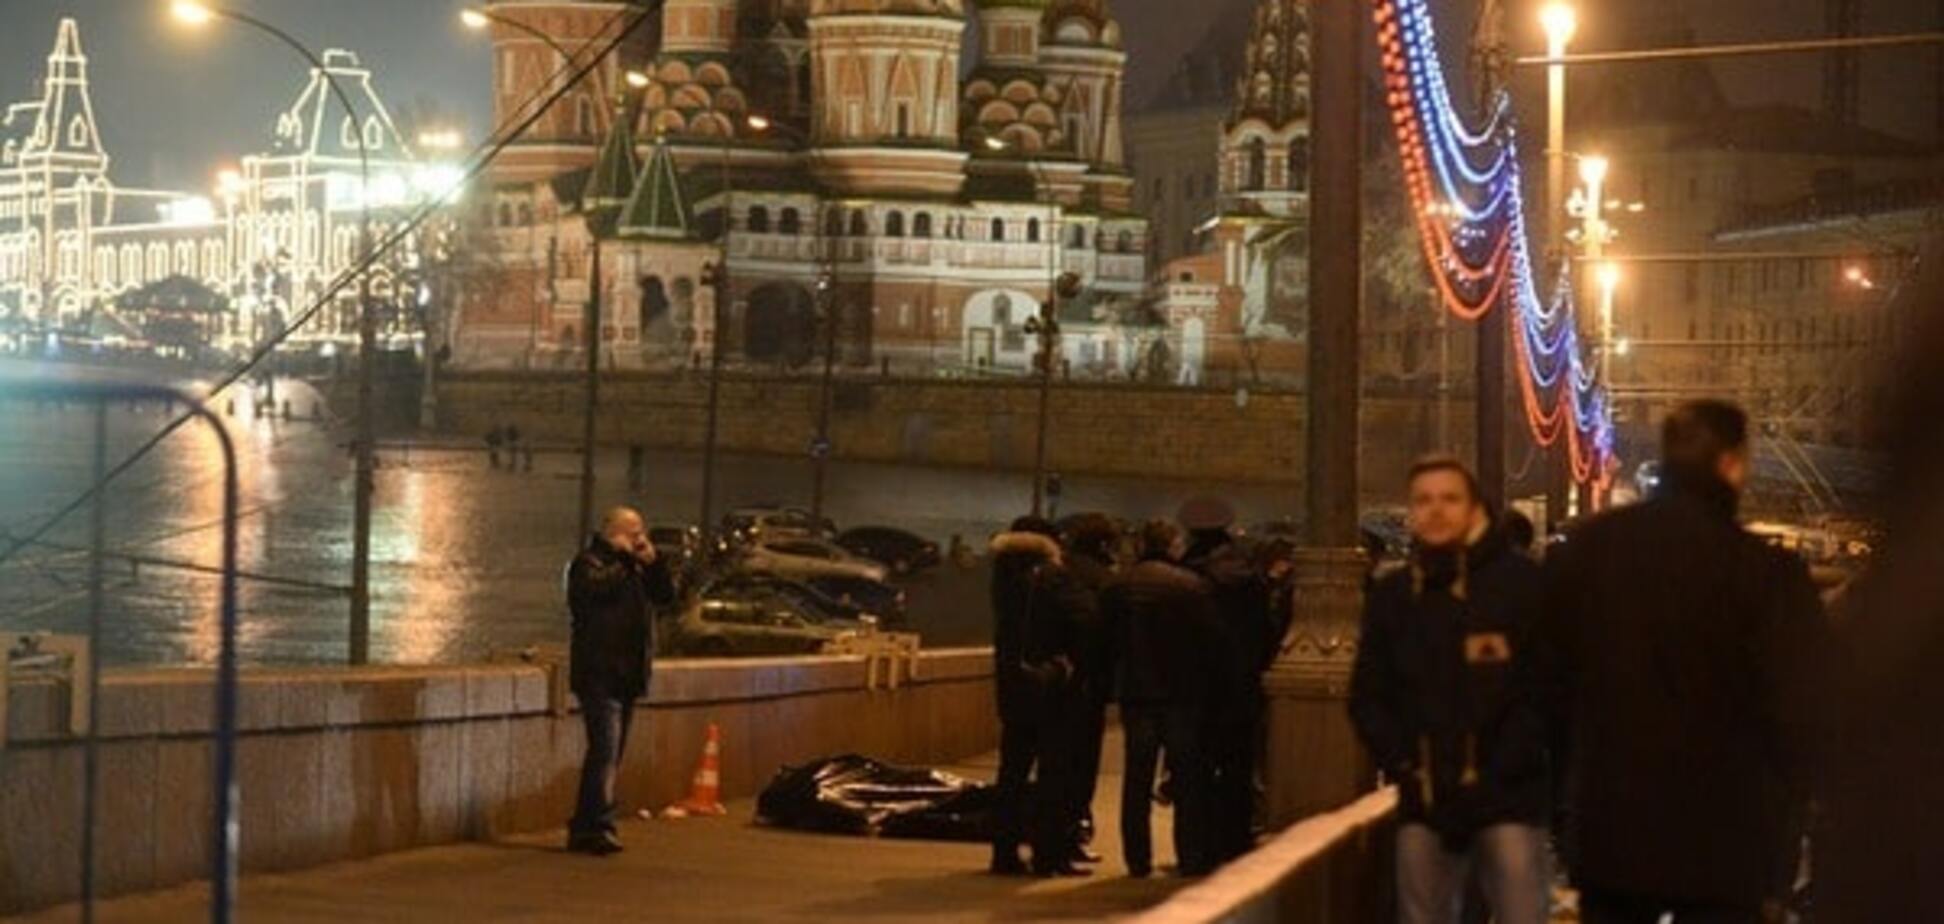 Адвокат объяснил, почему дело Немцова нельзя считать раскрытым